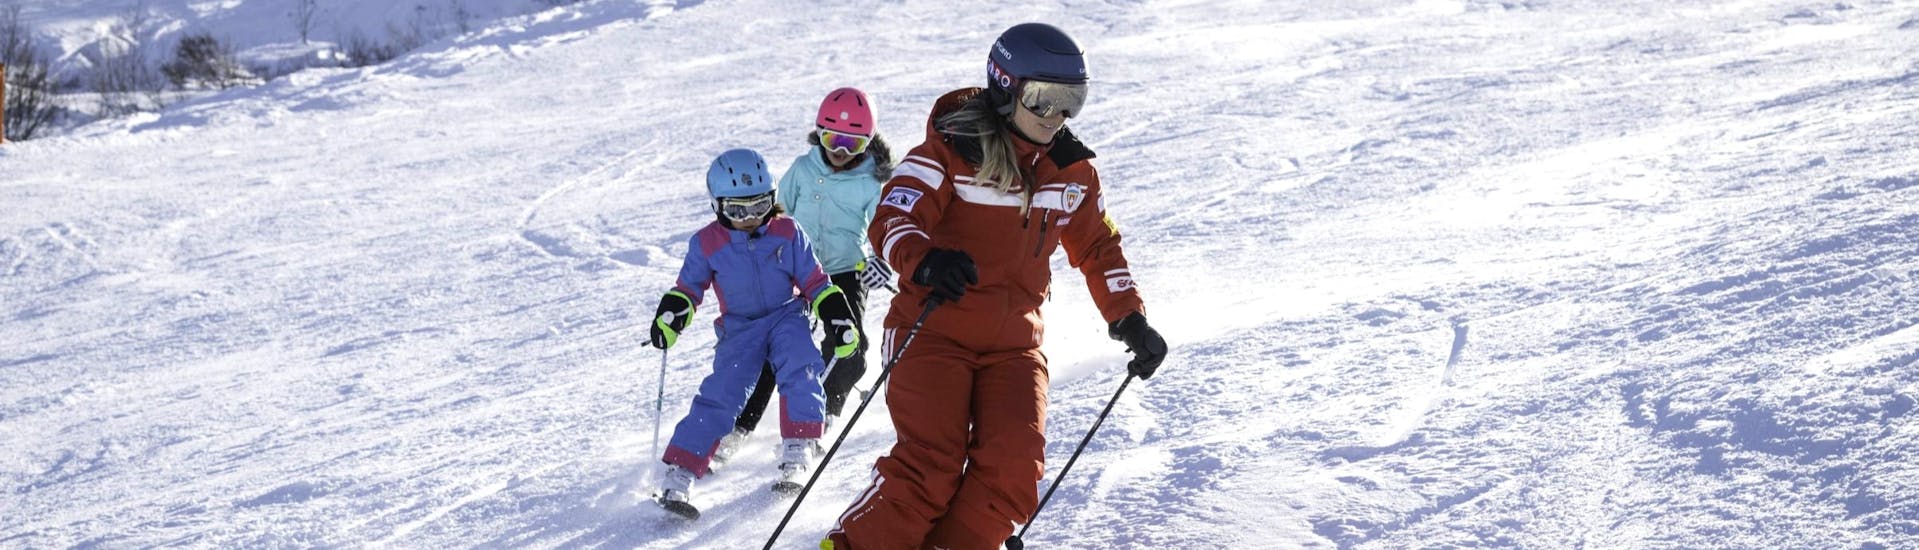 Cours de ski Enfants dès 3 ans.